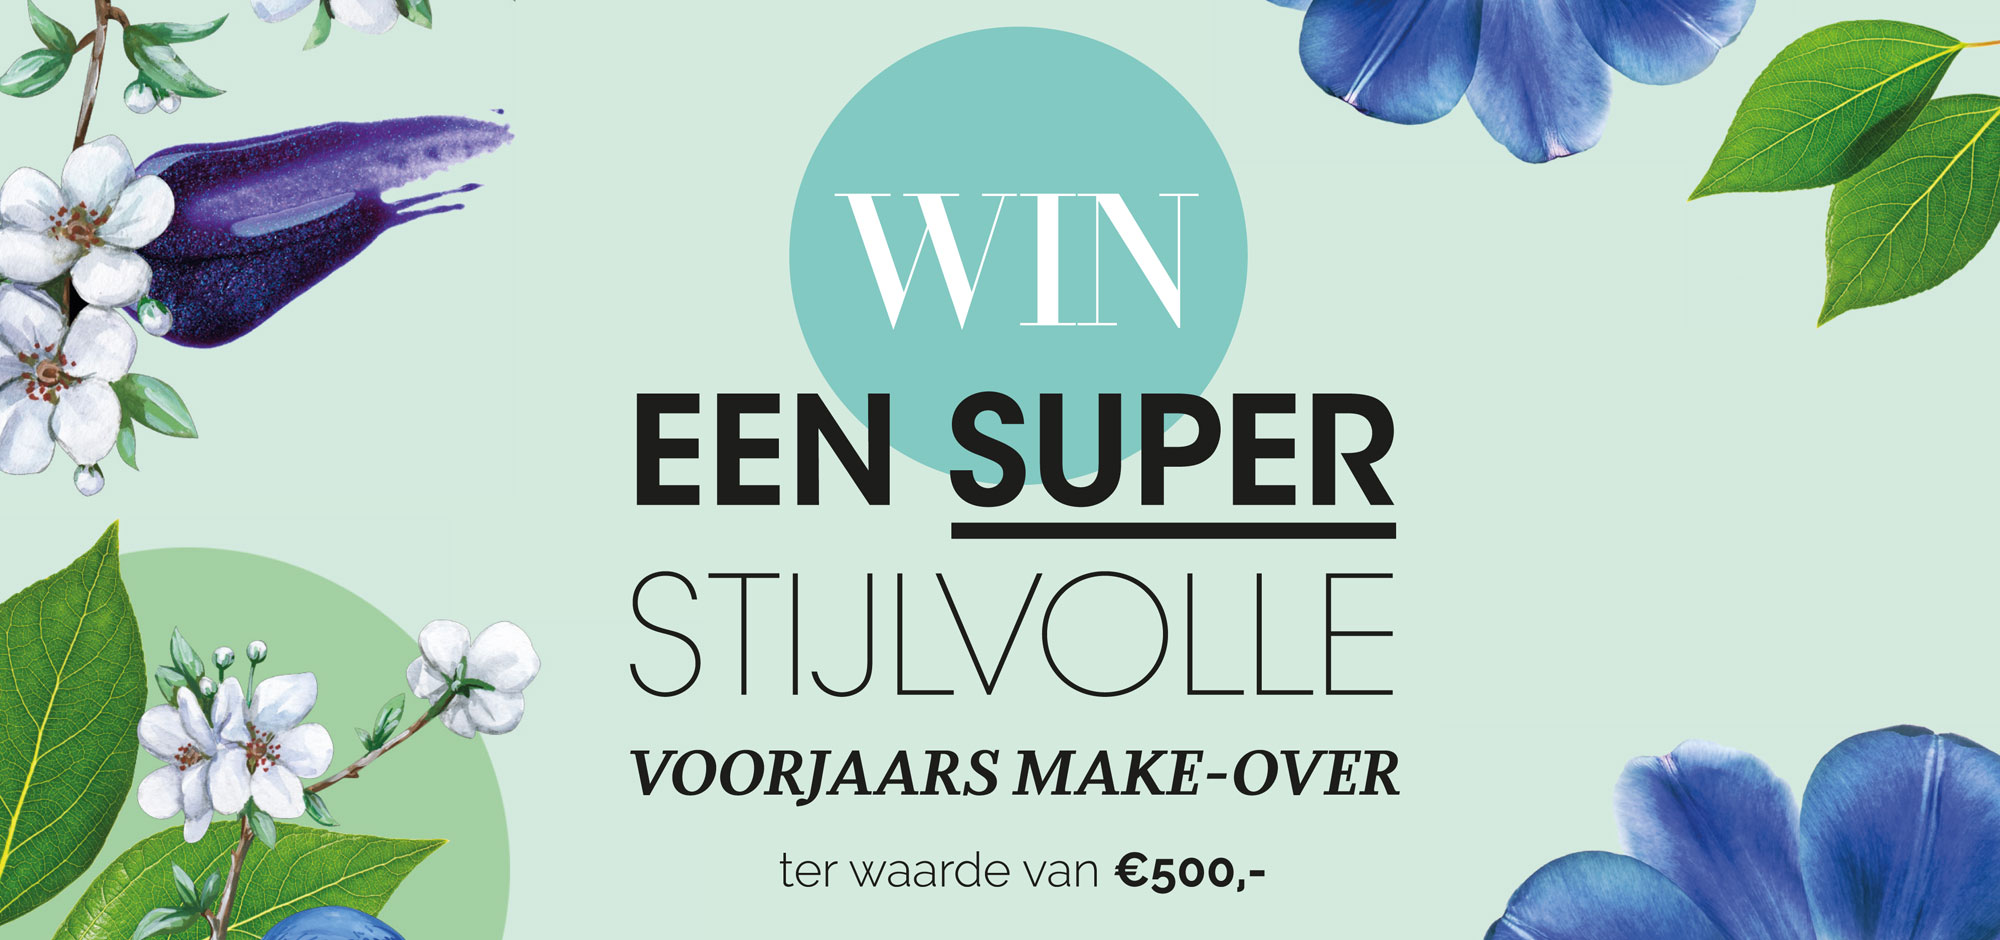 Featured image of article: Win een voorjaars make-over t.w.v. €500,-!